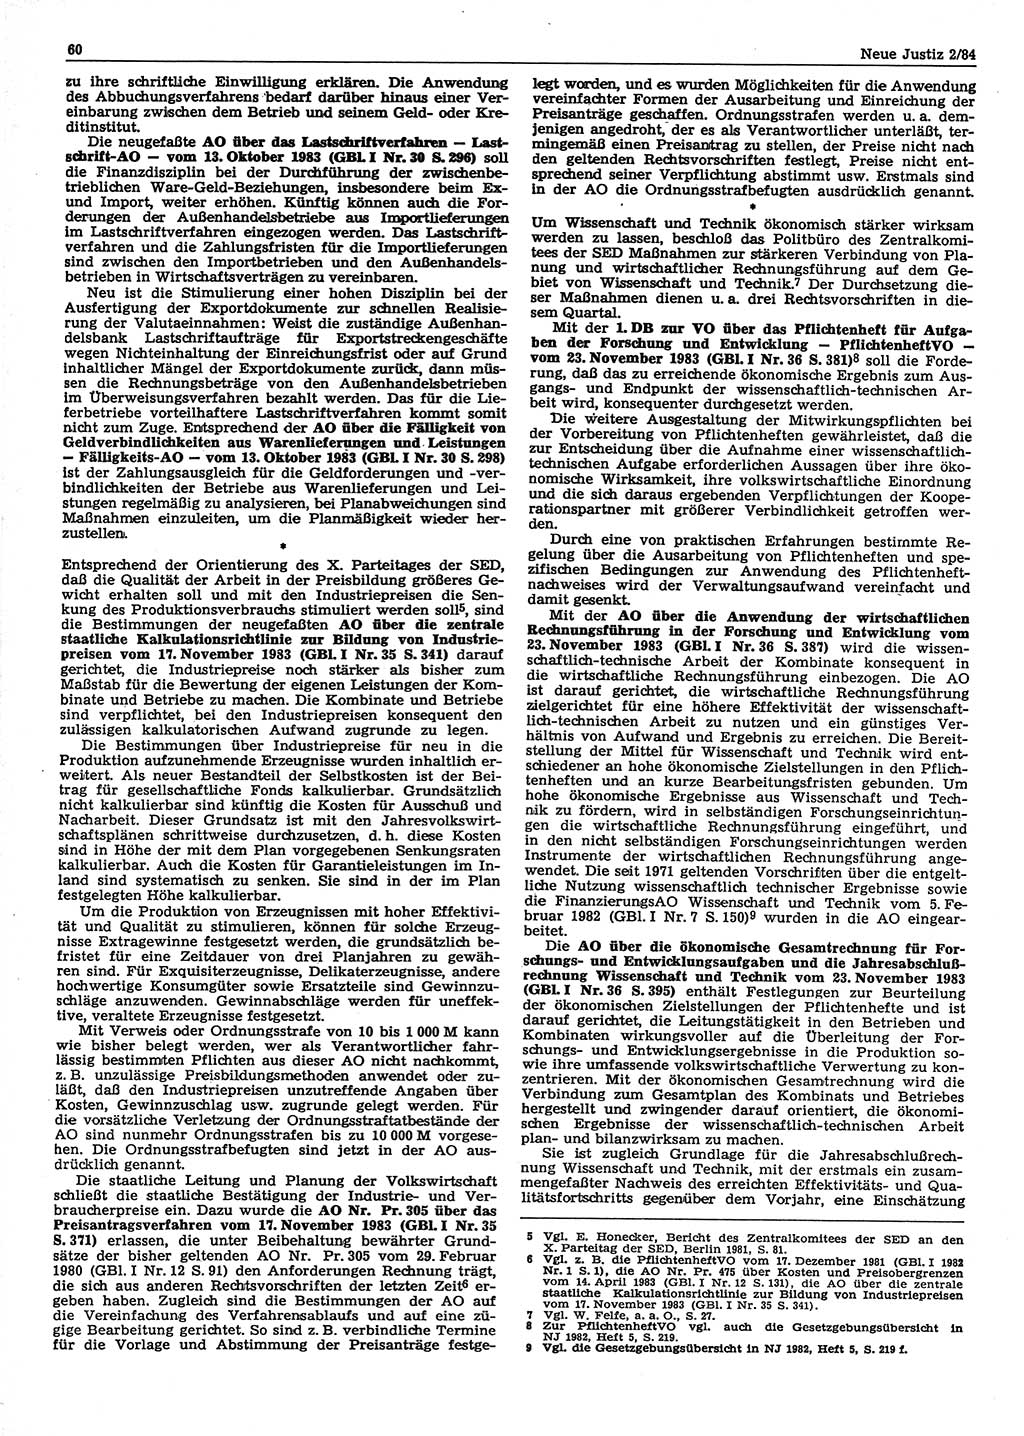 Neue Justiz (NJ), Zeitschrift für sozialistisches Recht und Gesetzlichkeit [Deutsche Demokratische Republik (DDR)], 38. Jahrgang 1984, Seite 60 (NJ DDR 1984, S. 60)